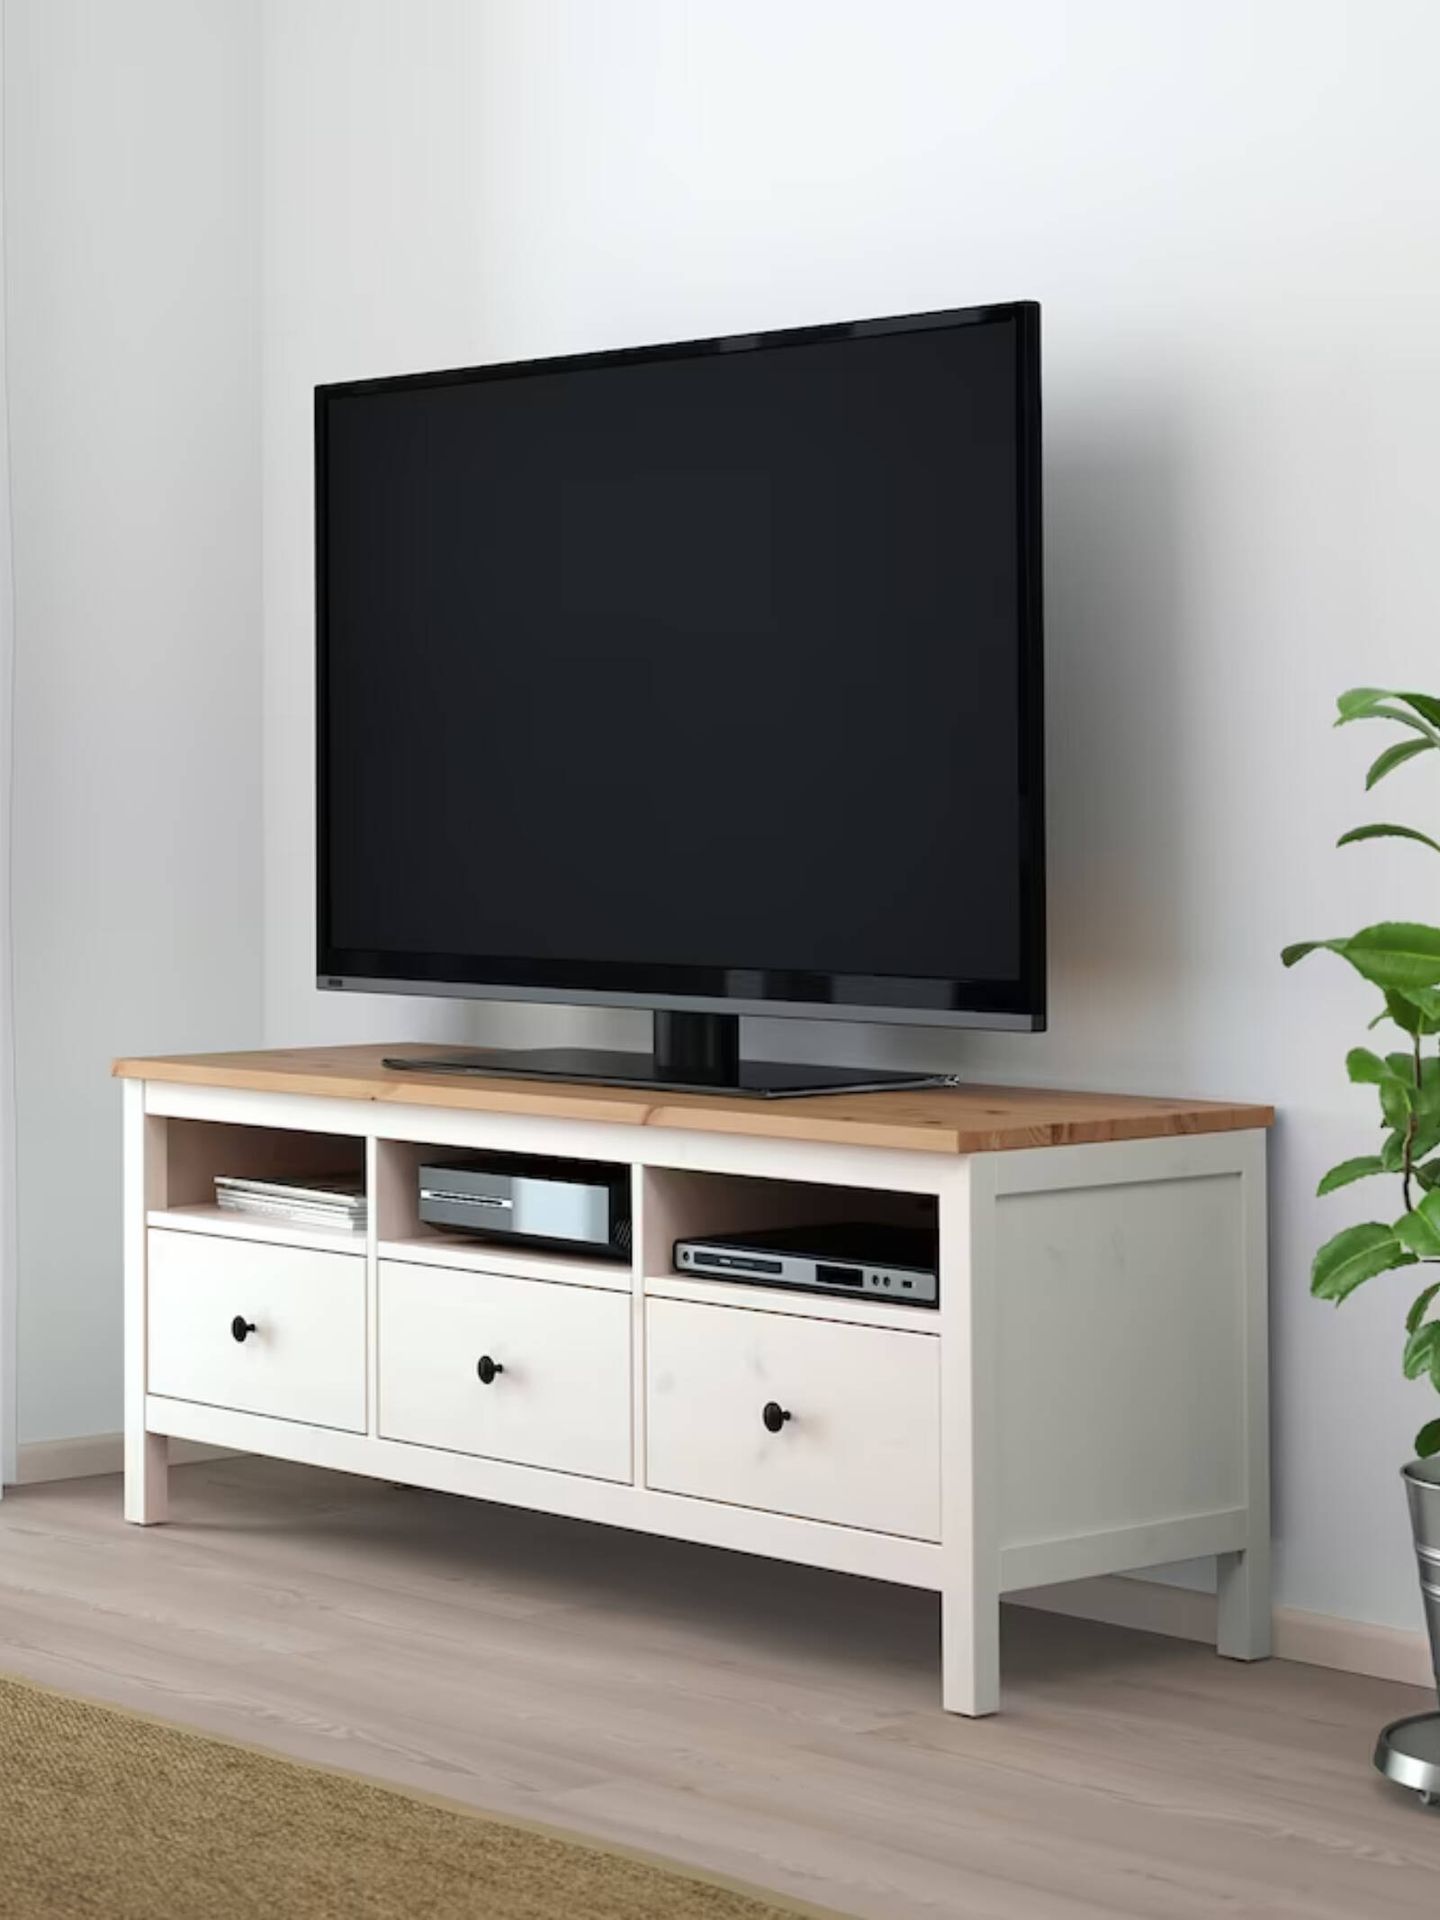 Mueble para la televisión Hemnes de Ikea. (Cortesía/Ikea)